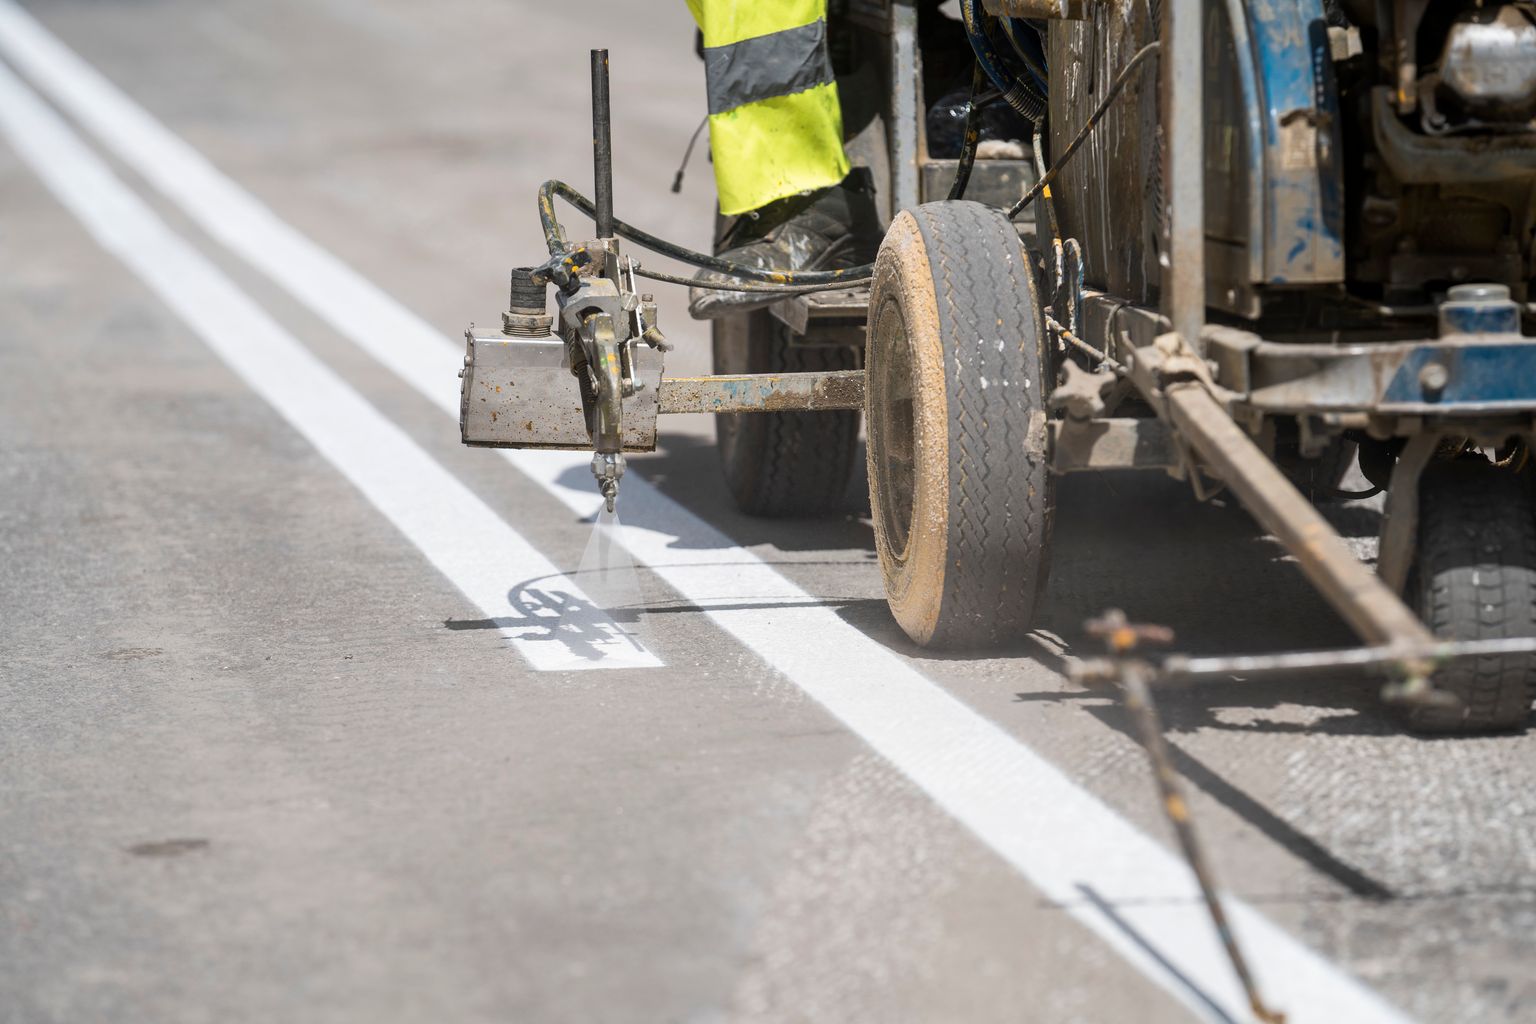 Detalle de la máquina que pinta la doble línea continua sobre el asfalto de la obra de ampliación de aceras de Vía Laietana